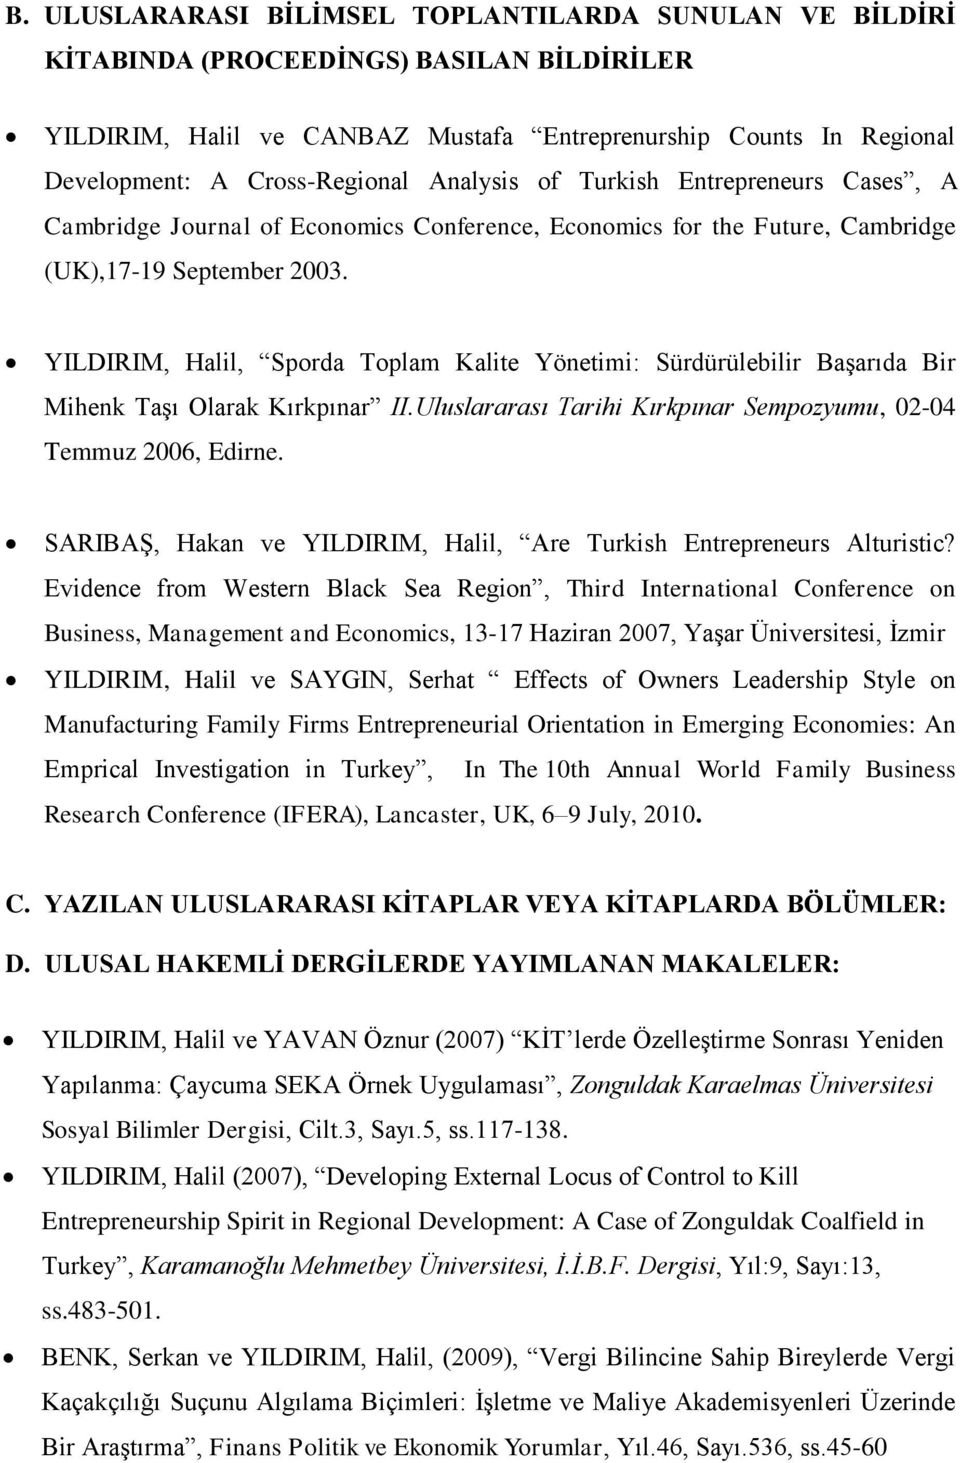 YILDIRIM, Halil, Sporda Toplam Kalite Yönetimi: Sürdürülebilir Başarıda Bir Mihenk Taşı Olarak Kırkpınar II.Uluslararası Tarihi Kırkpınar Sempozyumu, 02-04 Temmuz 2006, Edirne.